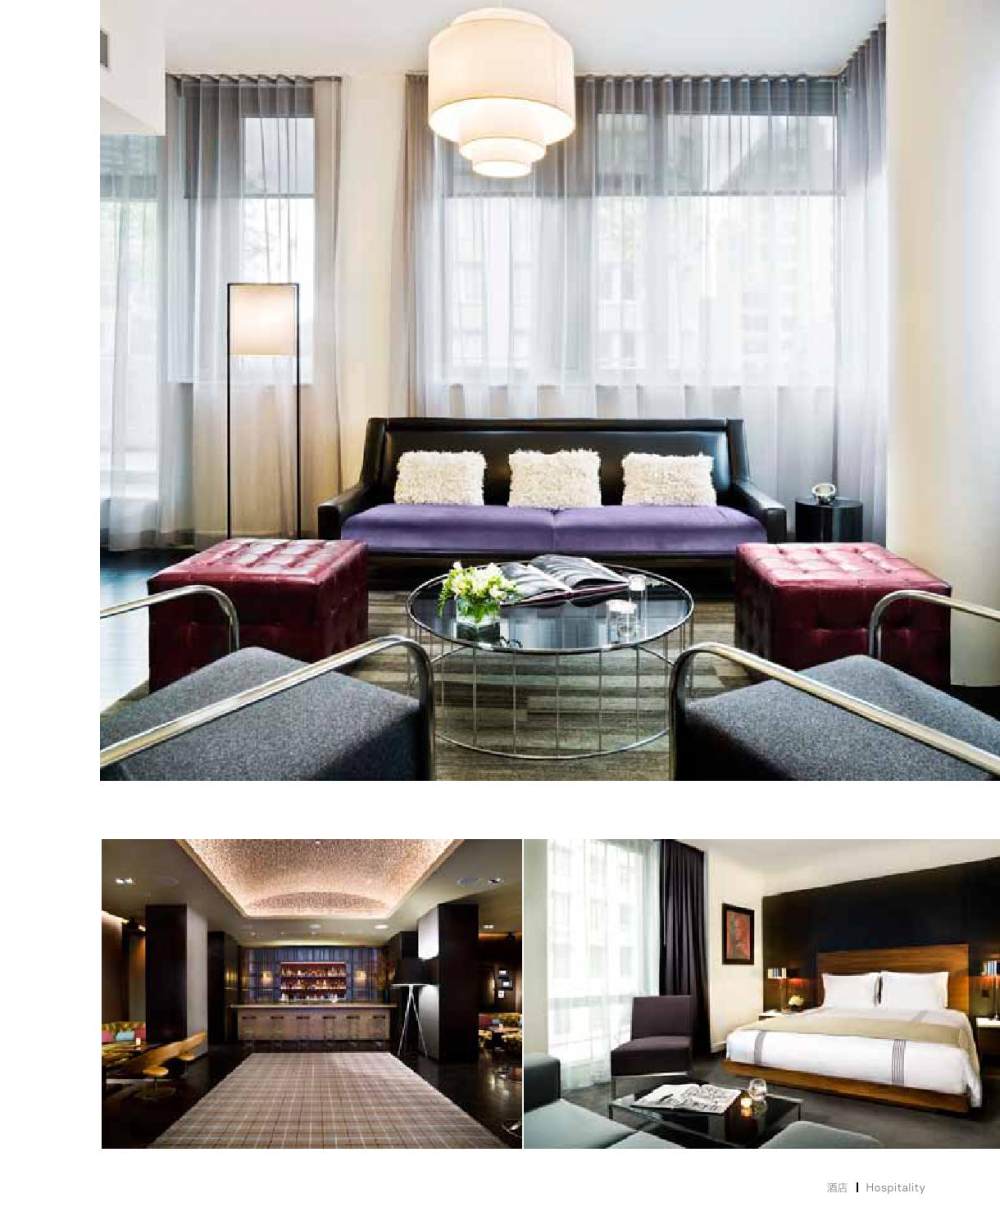 HOK AP 酒店室內設計 Hospitality Interious by HOK Marketing_page_23.jpg